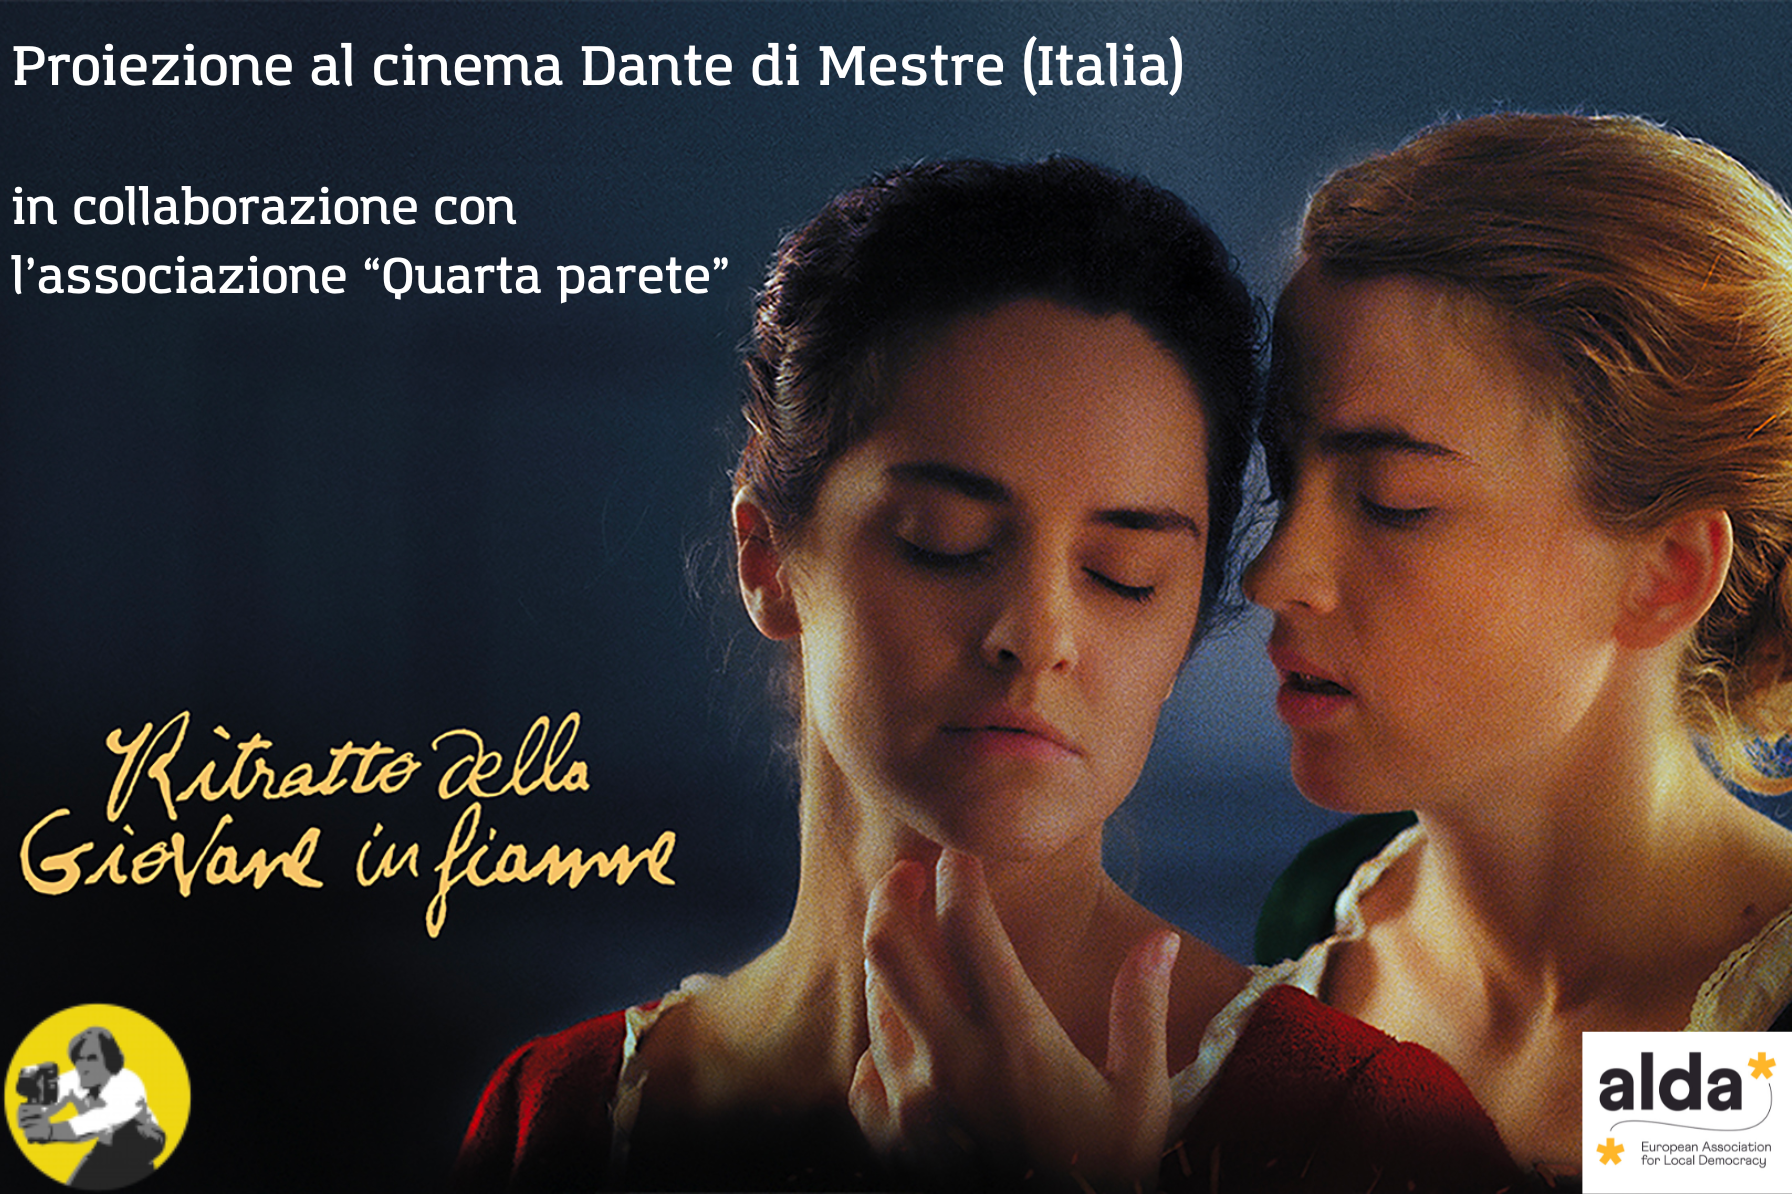 Proiezione "Il ritratto della giovane in fiamme" - Rassegna al Cinema Dante di Mestre. In collaborazione con l'Associazione "Quarta Parete".